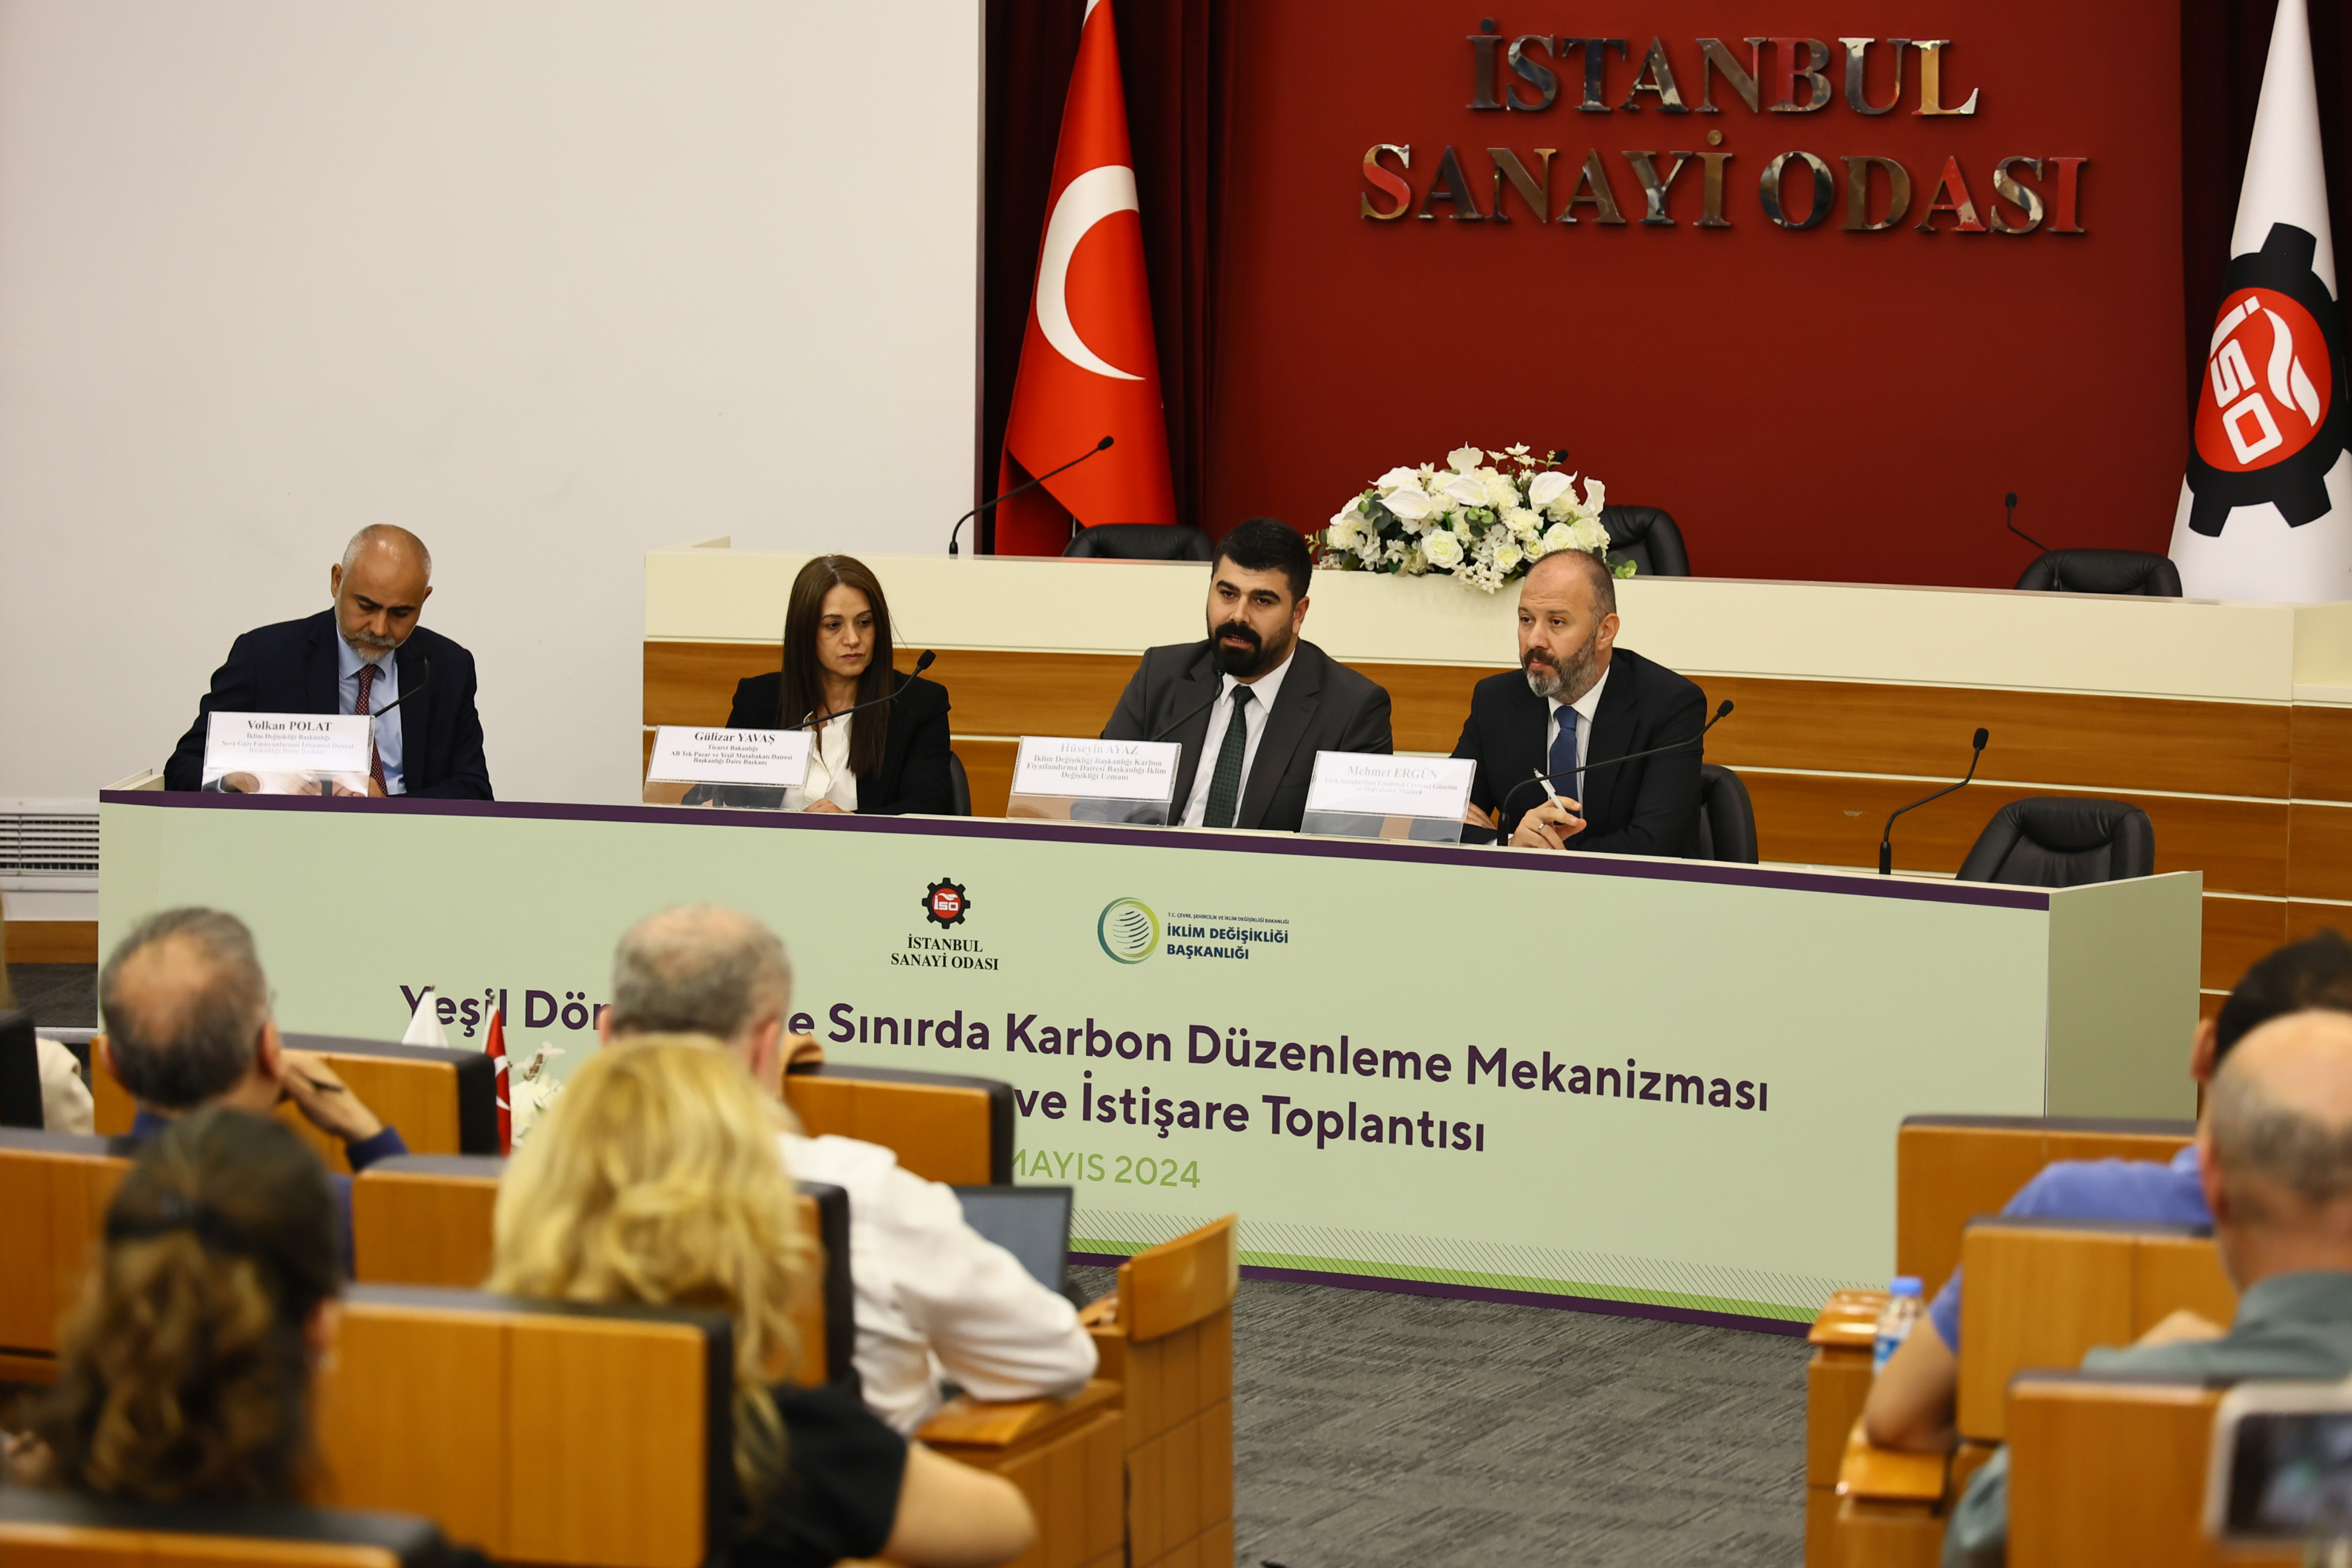 Yeşil Dönüşüm ve SKDM Bilgilendirme ve İstişare Toplantıları İstanbul Sanayi Odası’nda gerçekleştirildi